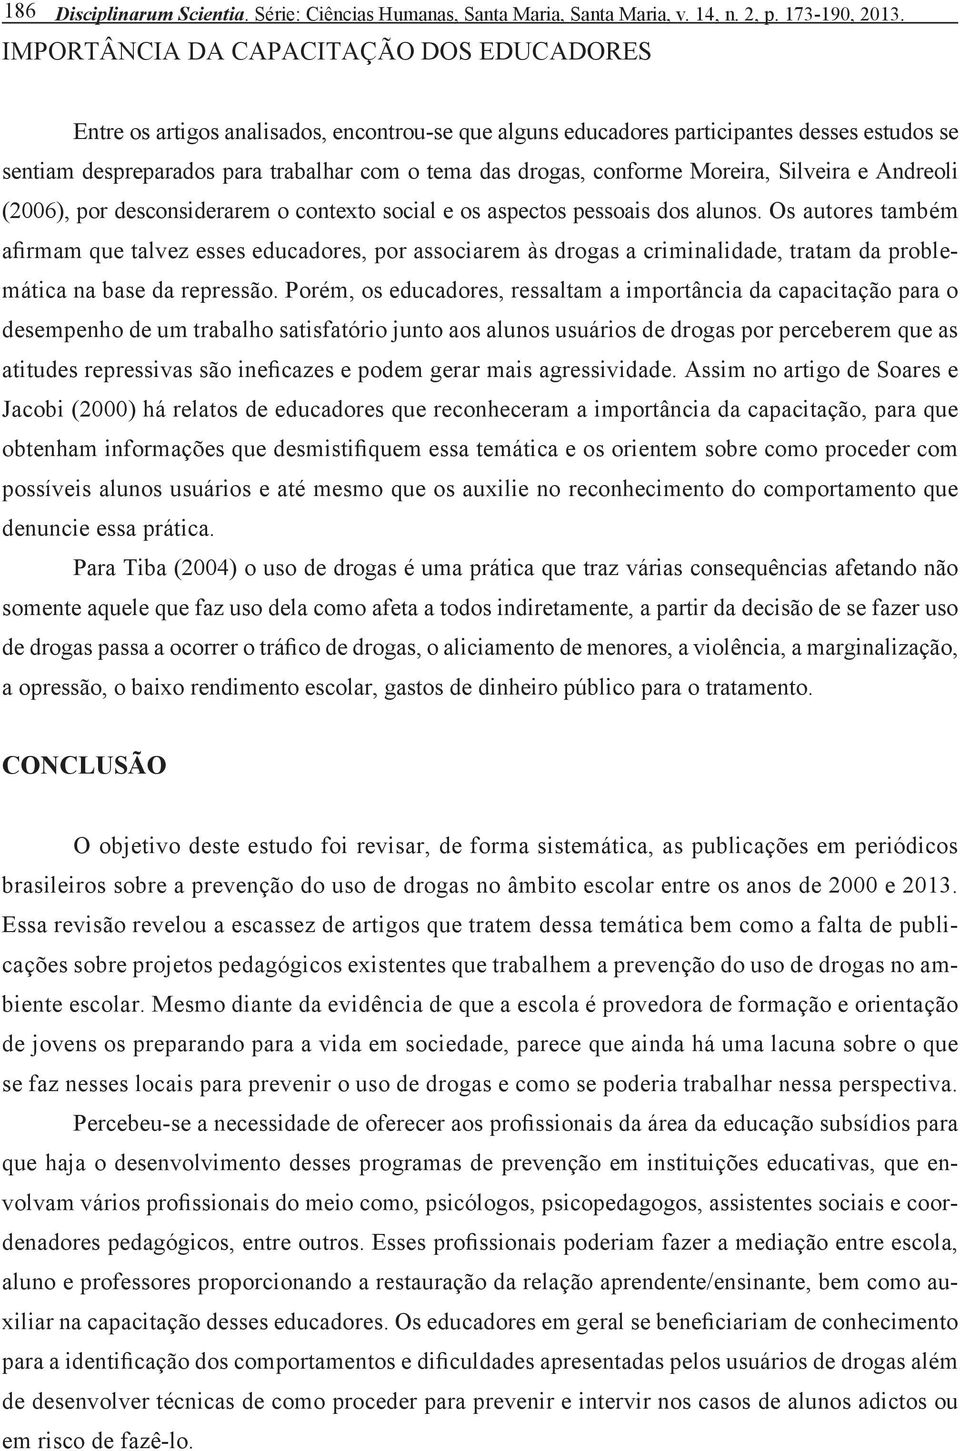 conforme Moreira, Silveira e Andreoli (2006), por desconsiderarem o contexto social e os aspectos pessoais dos alunos.